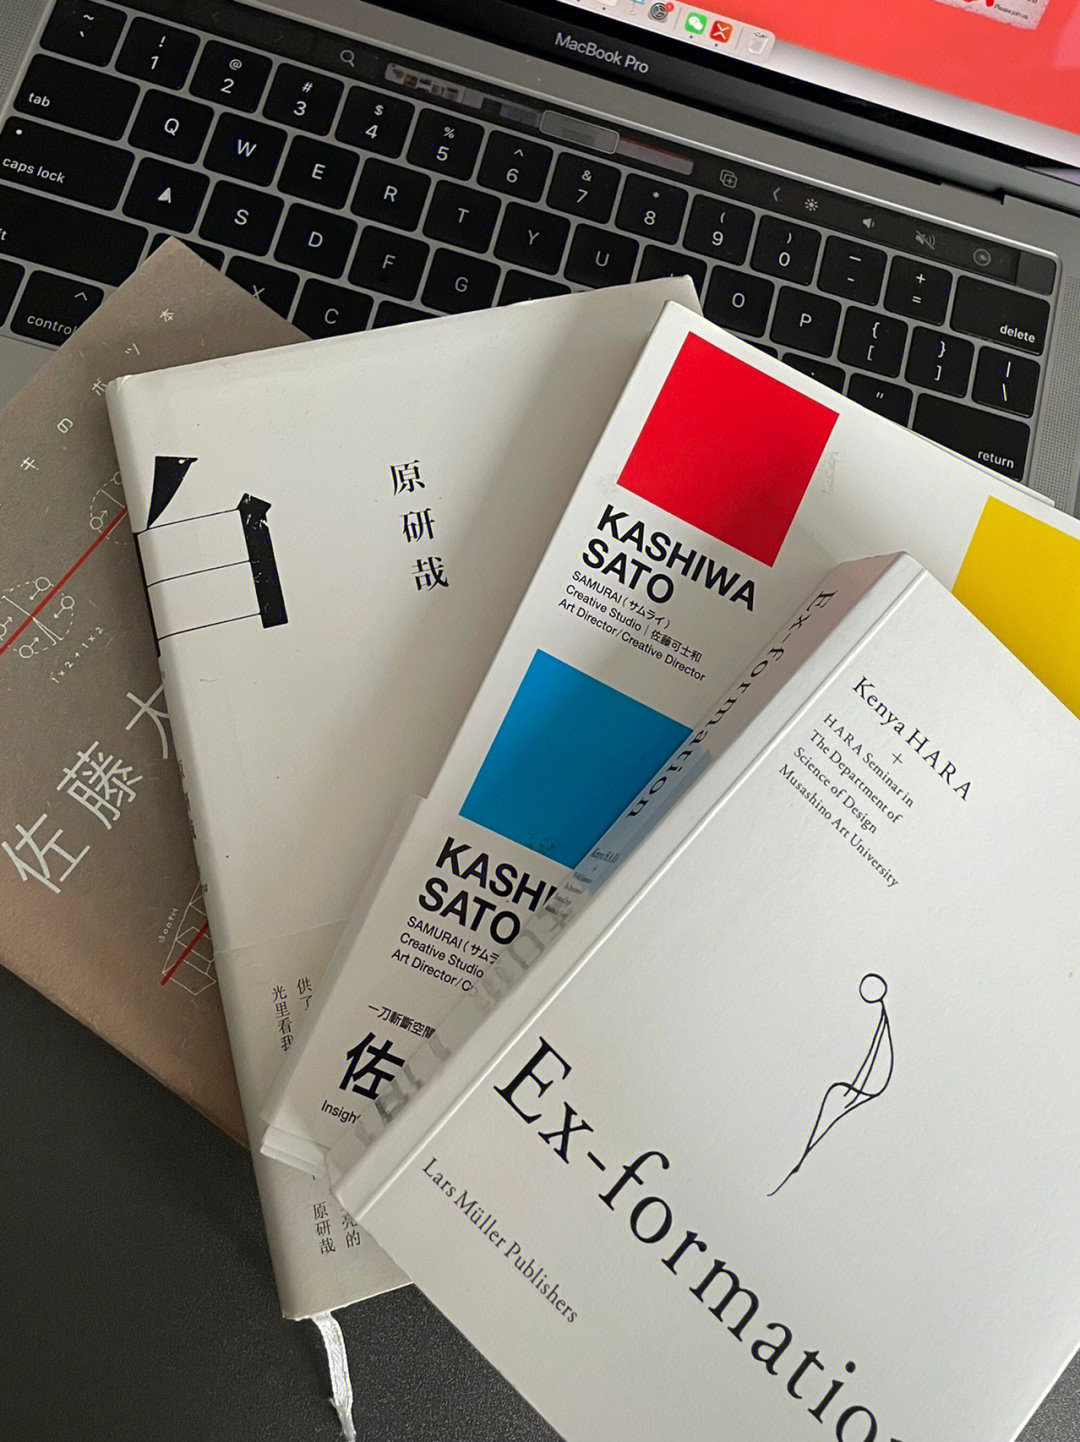 设计师必看设计博主超推荐的4本设计书籍